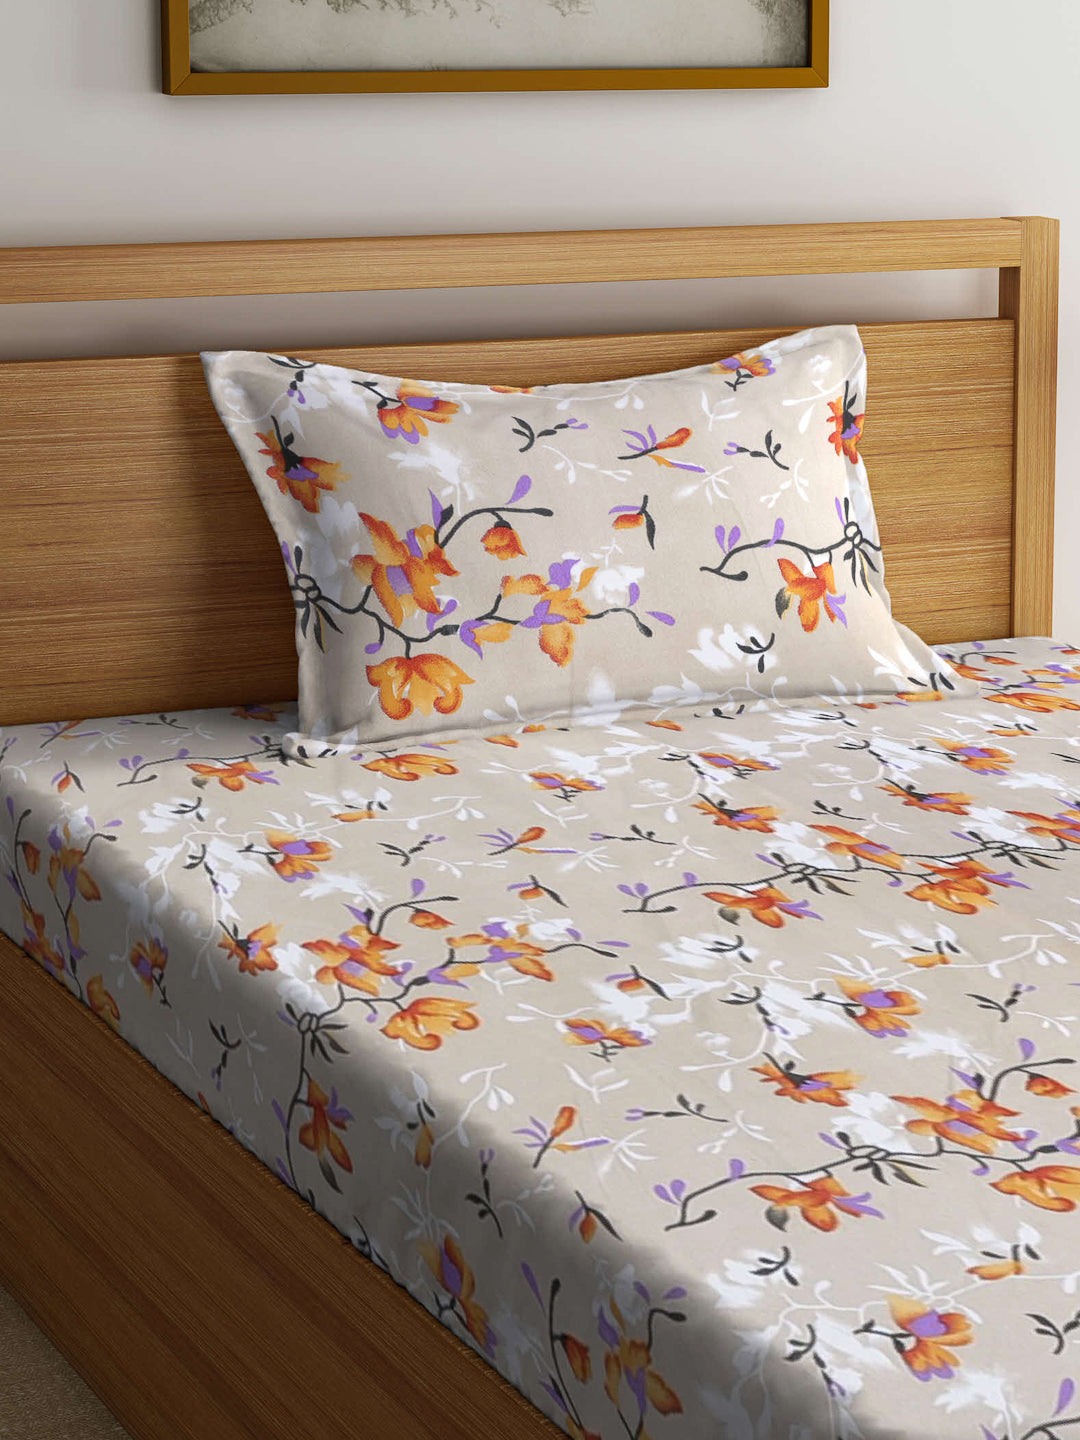 Arrabi Beige Floral TC Cotton Blend Single Size Bedsheet with 1 Pillow Cover ( 220 X 150 cm)